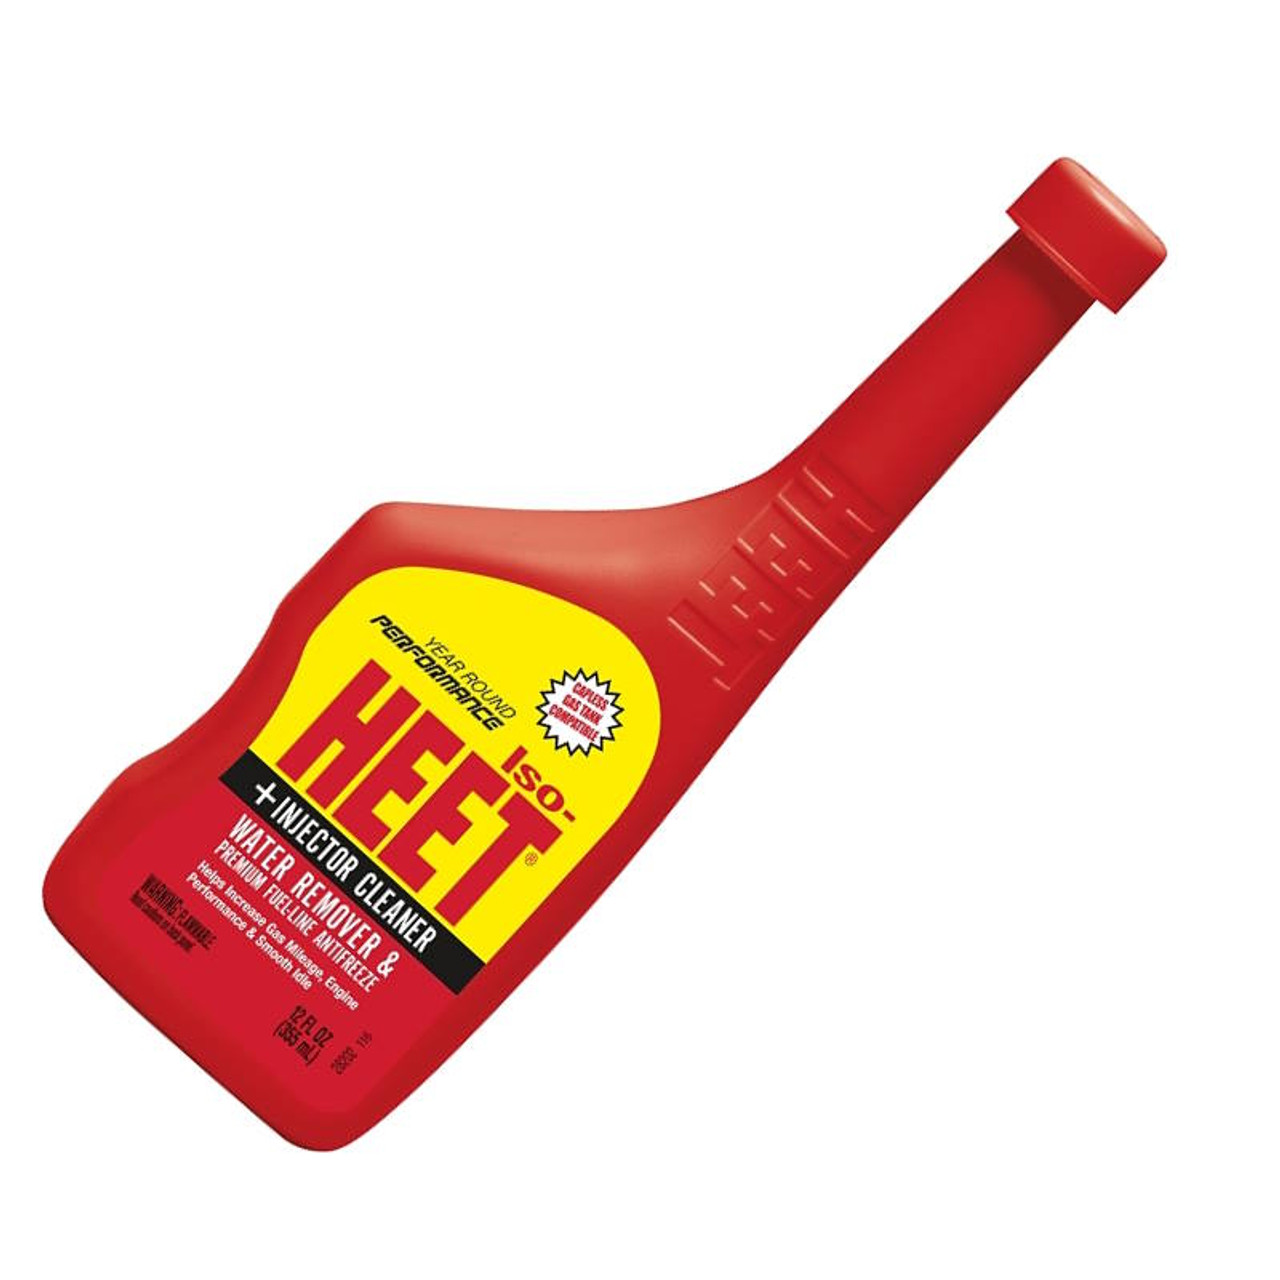 Iso Heet Fuel-Line Antifreeze + Injector Cleaner - 12 fl oz